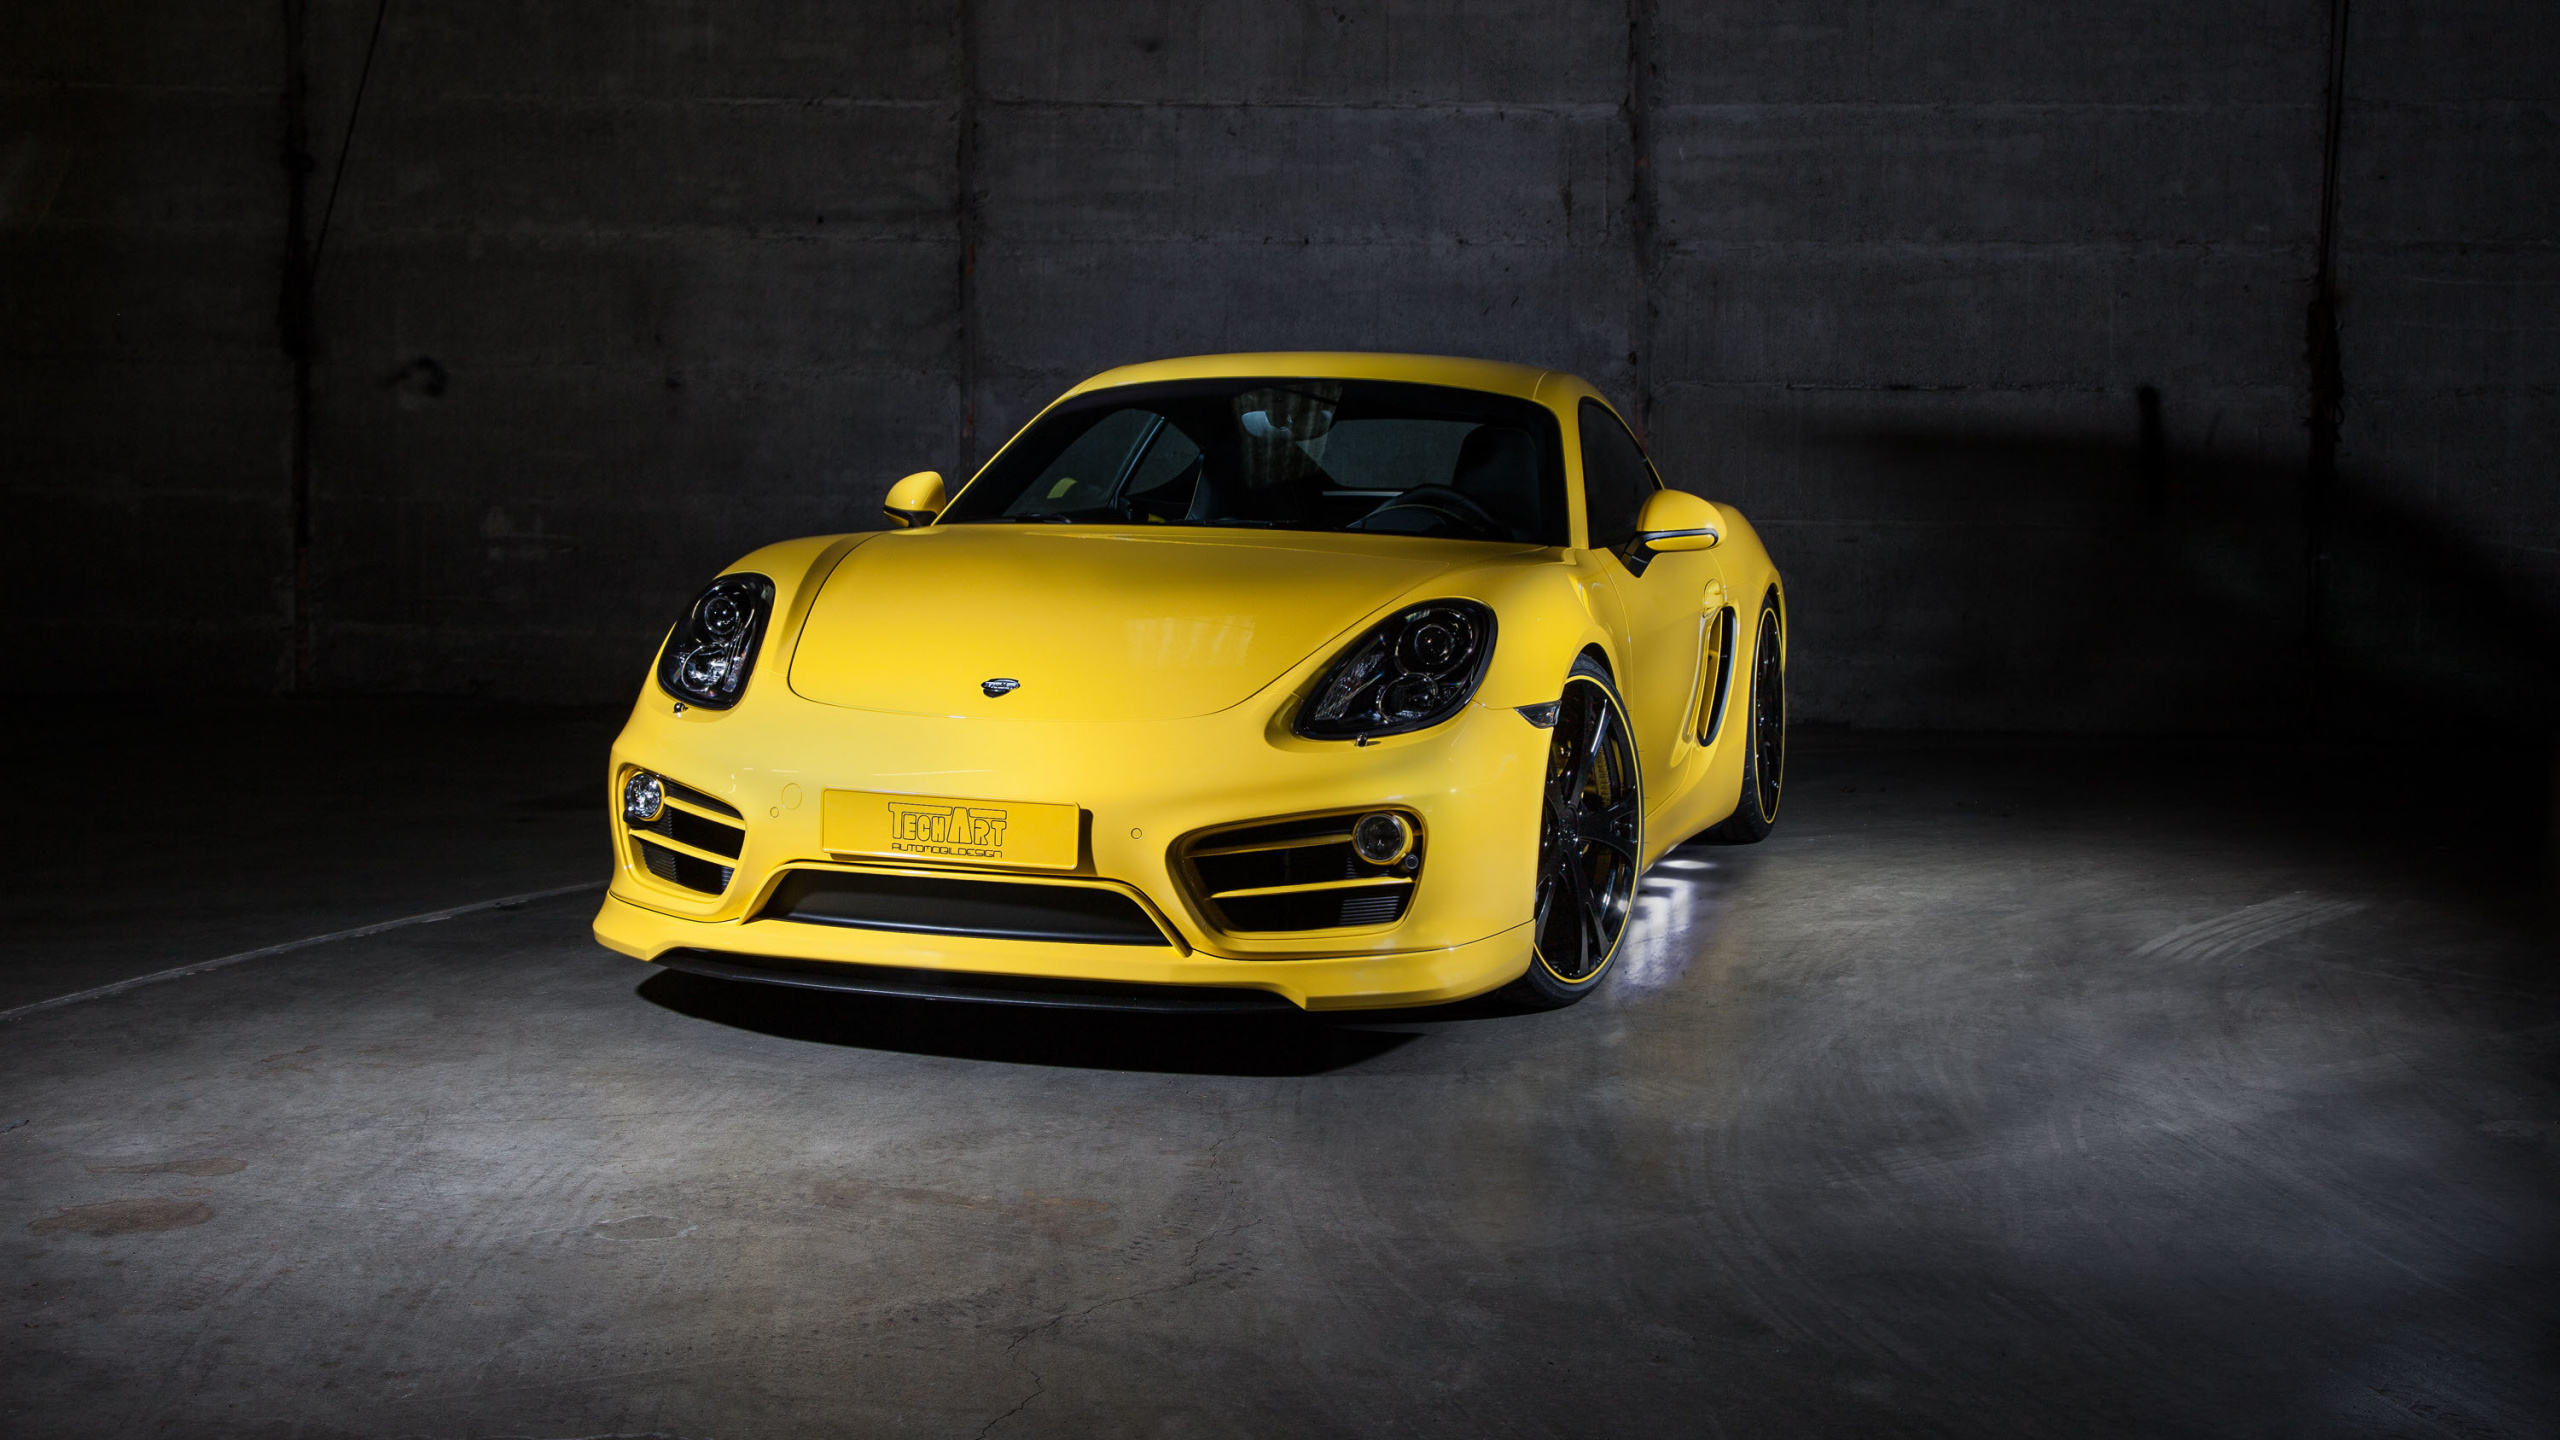 Gelber Porsche 911 in Einer Garage Geparkt. Wallpaper in 2560x1440 Resolution